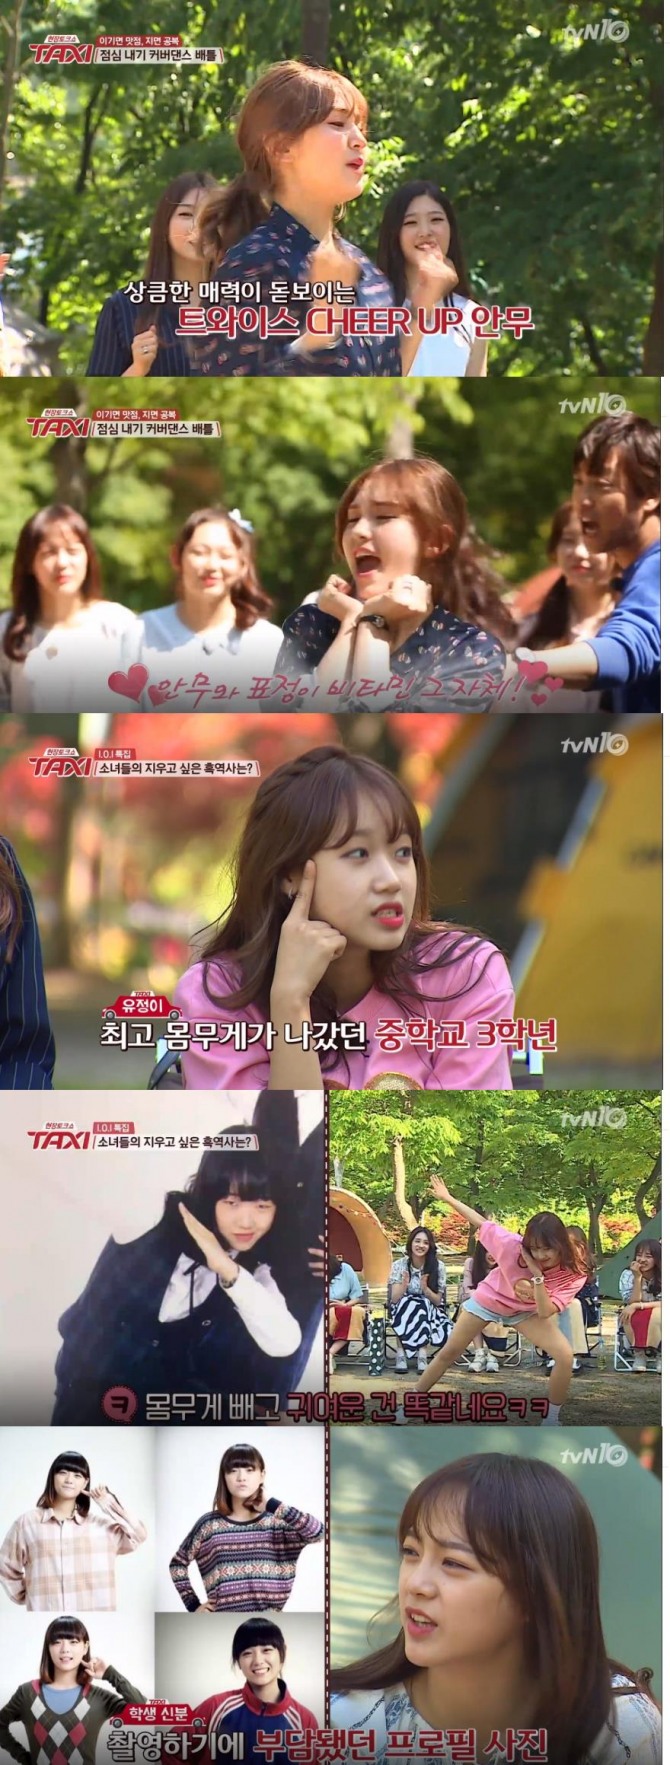 24일 방송된 tvN '현장토크쇼 택시'에서는 걸그룹 아이오아이가 출연, 봄소풍 콘셉트로 캠핑 장소에 도착해 댄스 베틀과 노래 대결을 펼치며 각 멤버들의 팔색조  매력을 선보였다./사진=tvN 방송 캡처